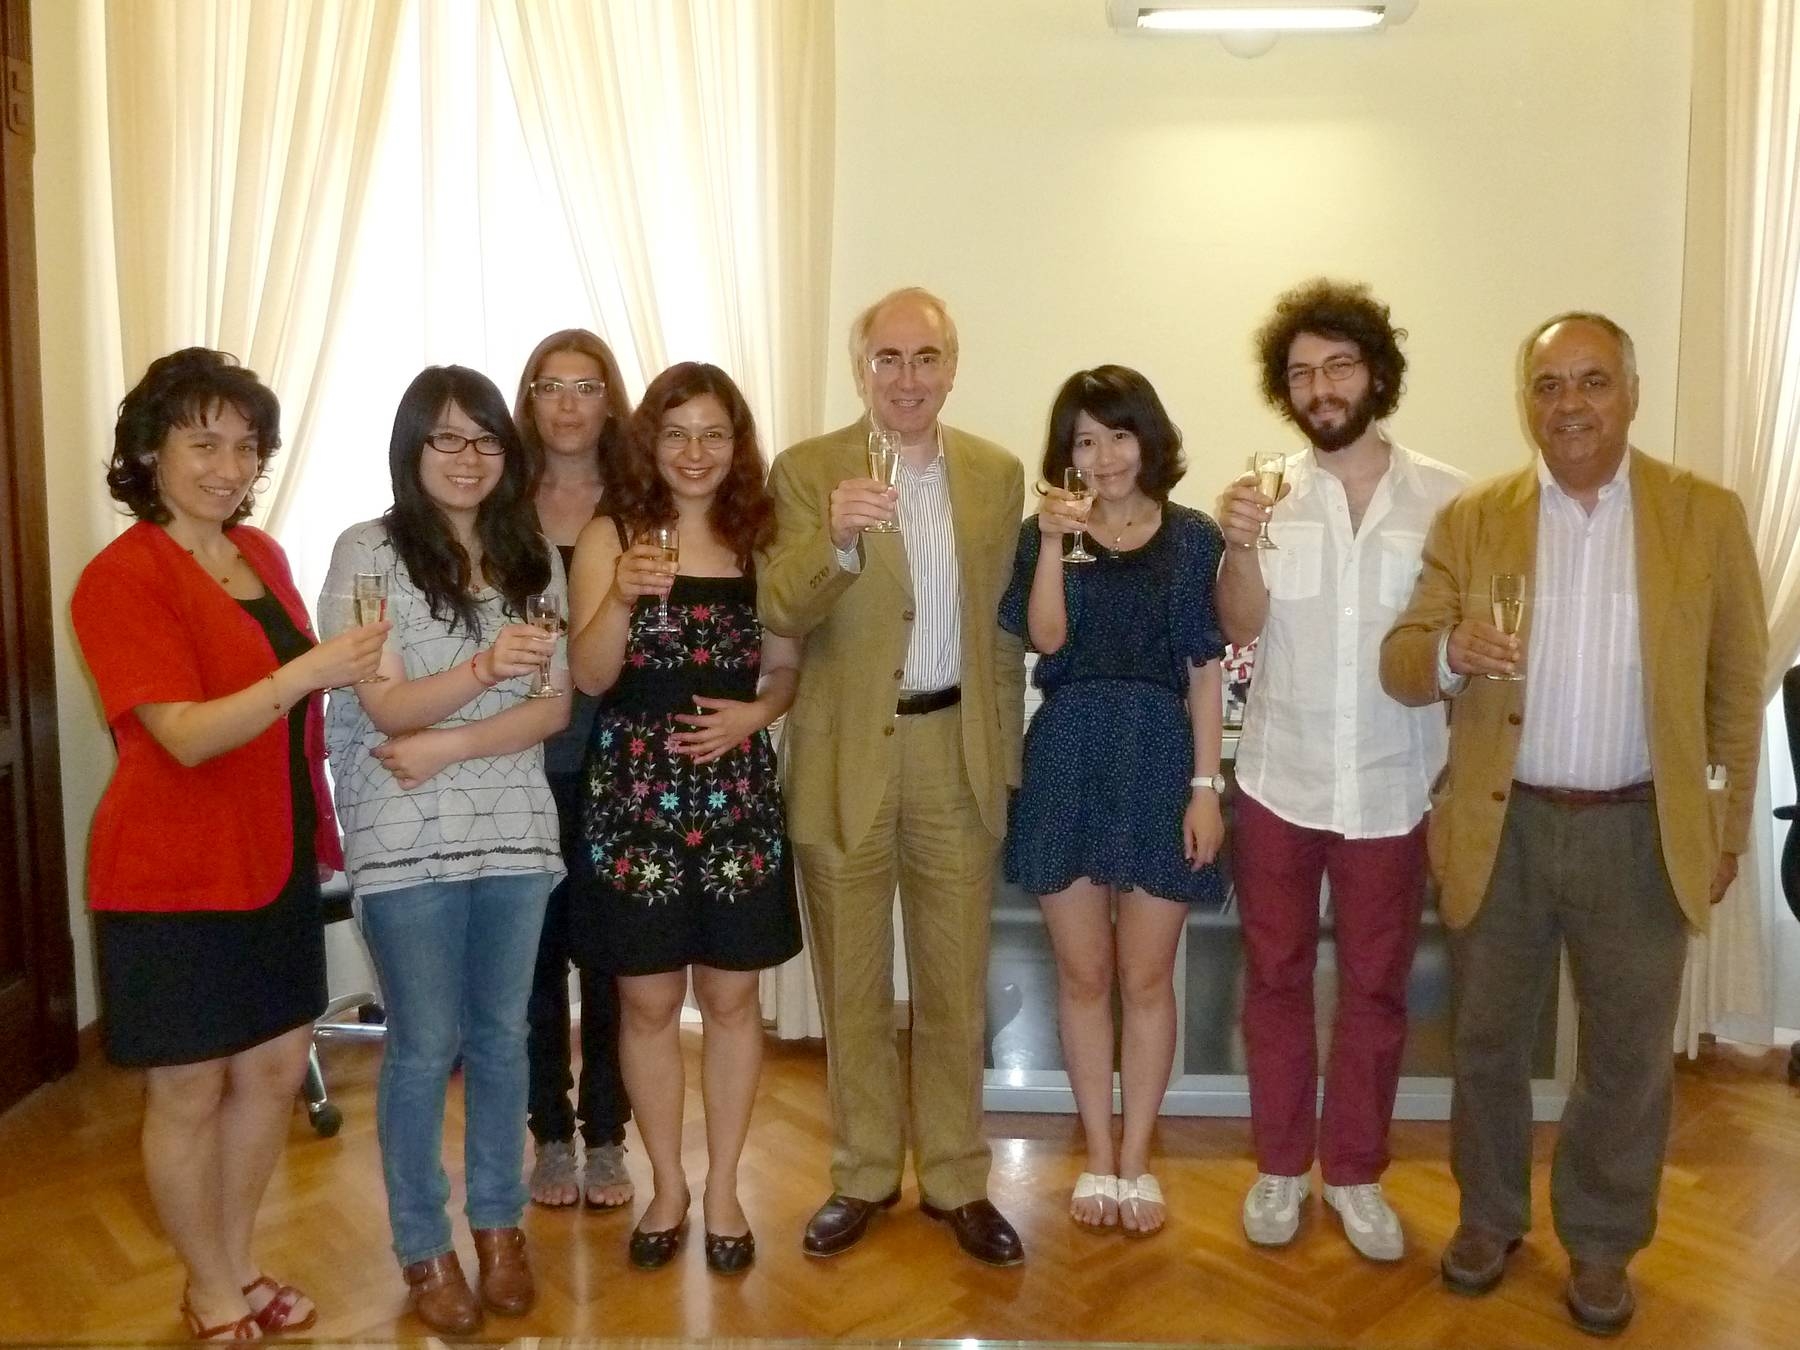 University of Macerata celebrates International graduates!